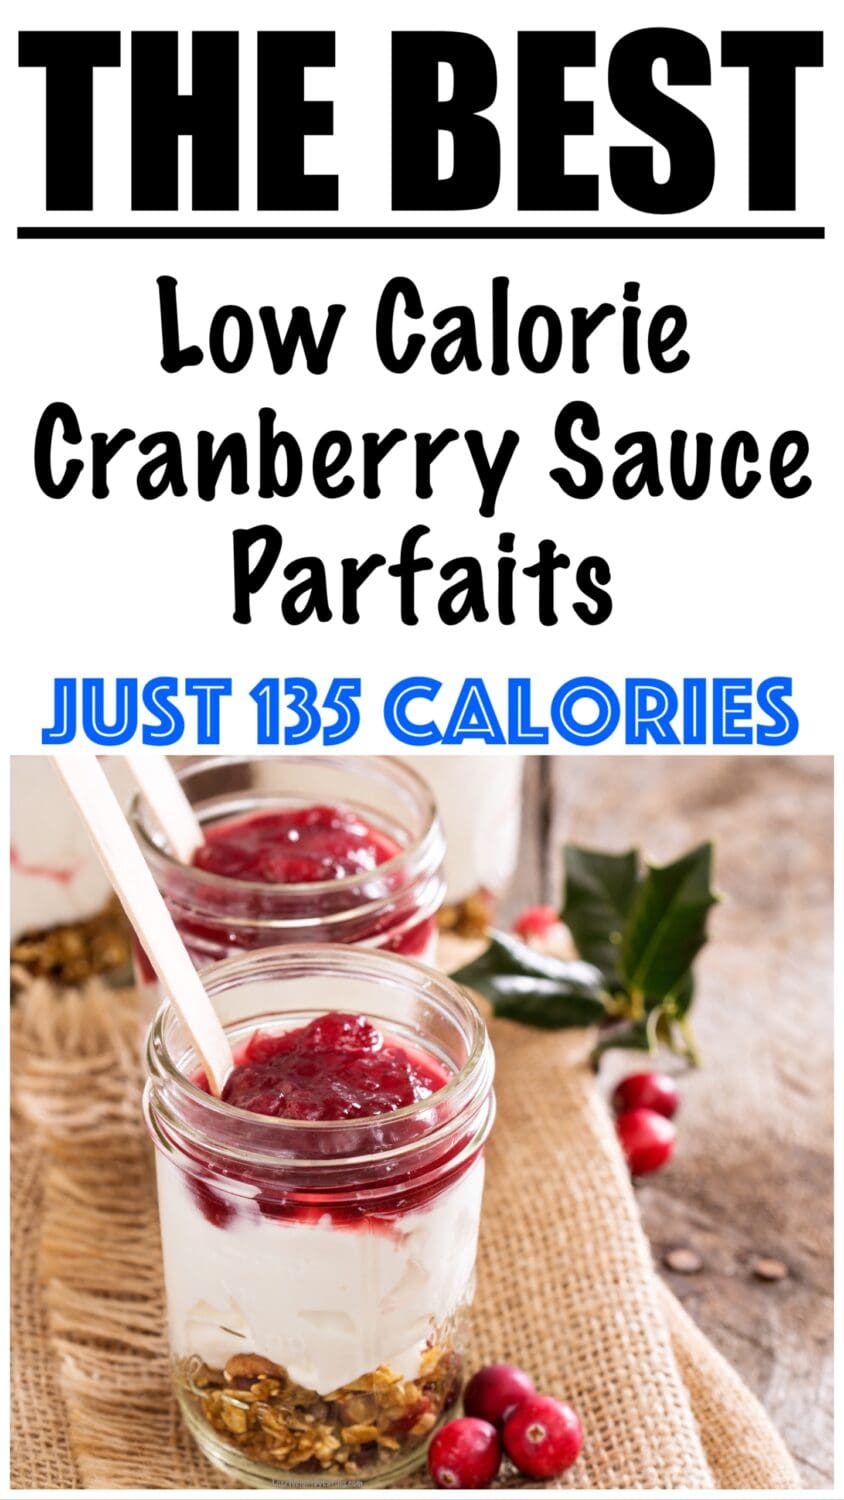 Low Calorie Cranberry Sauce Parfaits